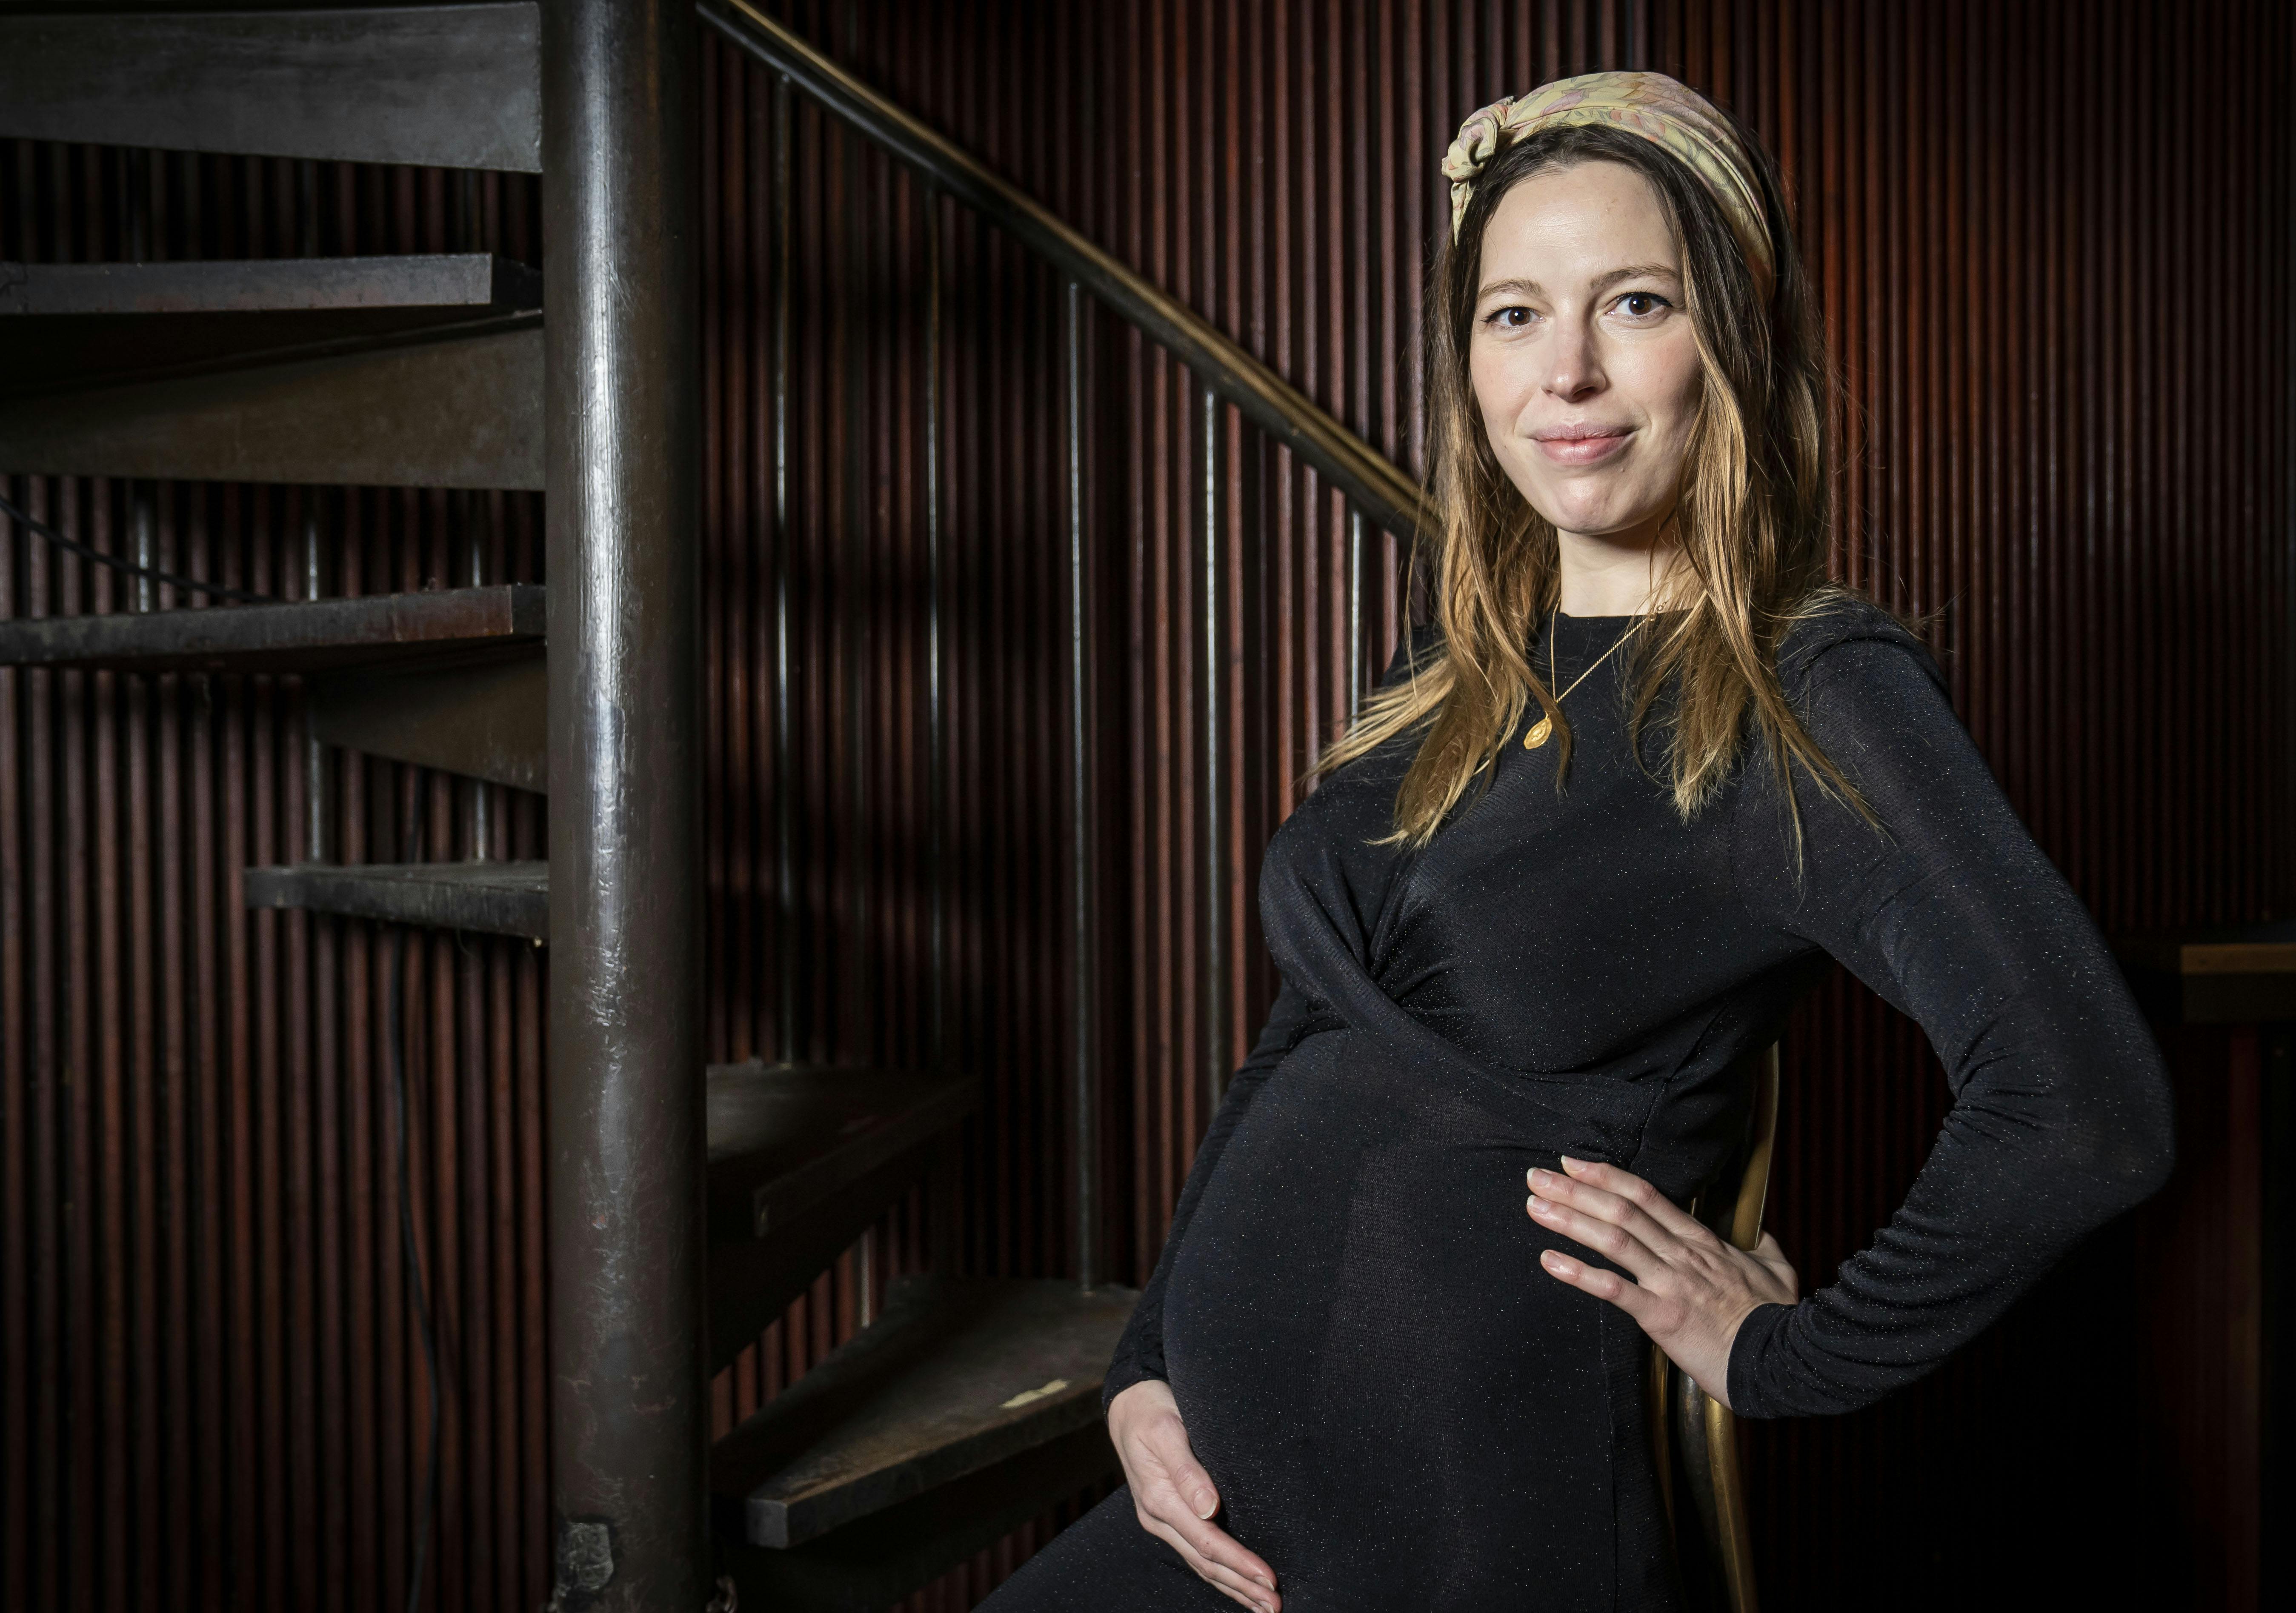 Henny fra "Dansegarderoben", eller Rebecca Rønde Kiilerich, forventer at føde om cirka to måneder. Nu fortæller hun, om hun venter en dreng eller pige.